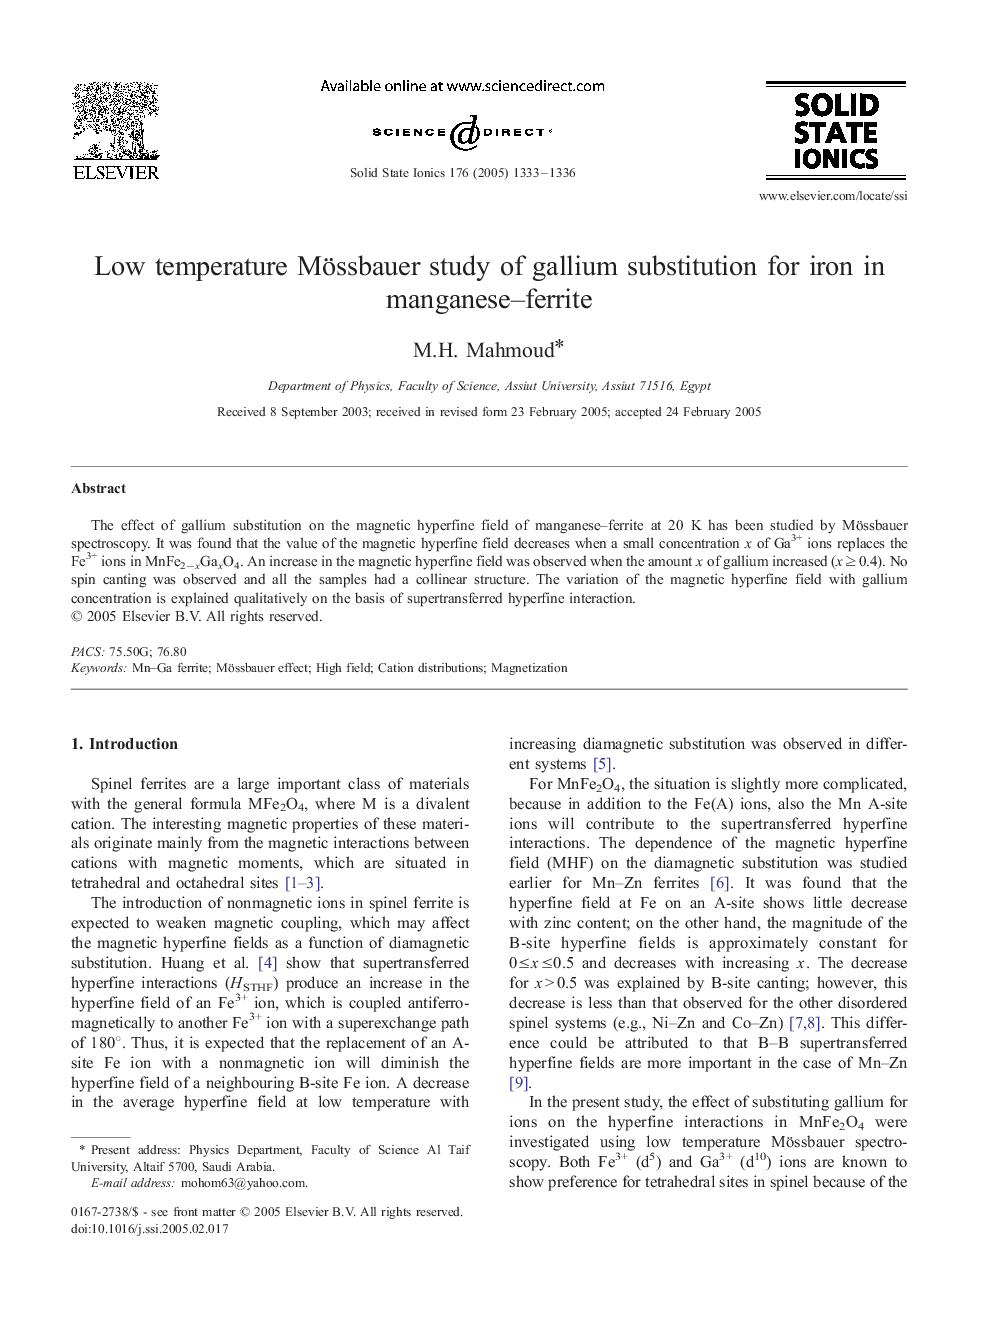 Low temperature Mössbauer study of gallium substitution for iron in manganese-ferrite